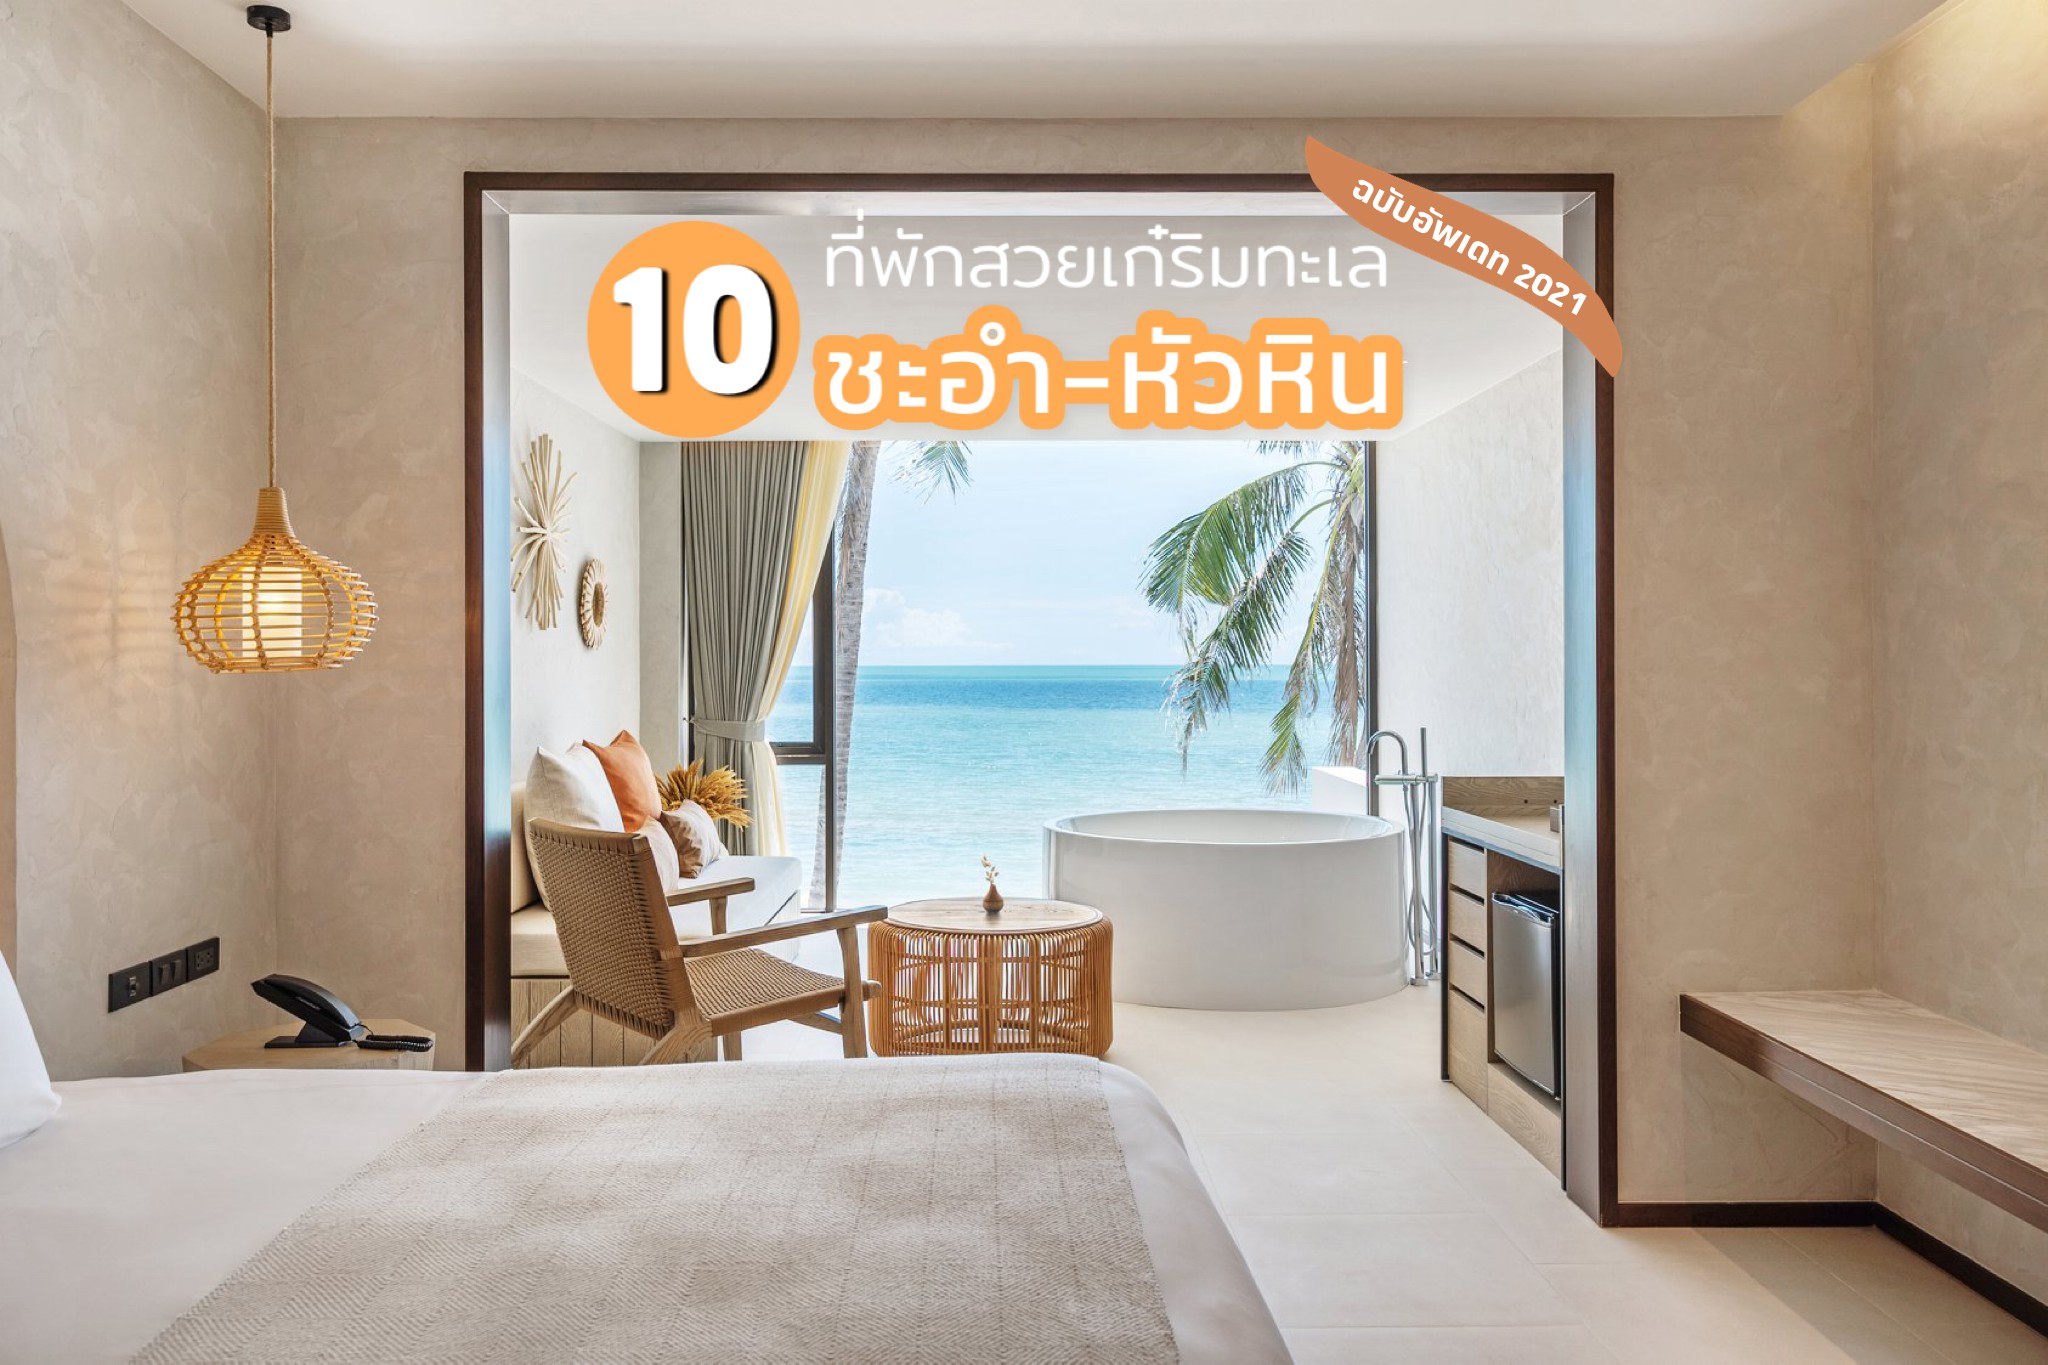 รวม 10 ที่พักสวย 5 ดาว ติดทะเล “ชะอำ” + “หัวหิน” อัพเดทล่าสุด 2021 – Chill  Journey | Thai Travel & Lifestyle blog